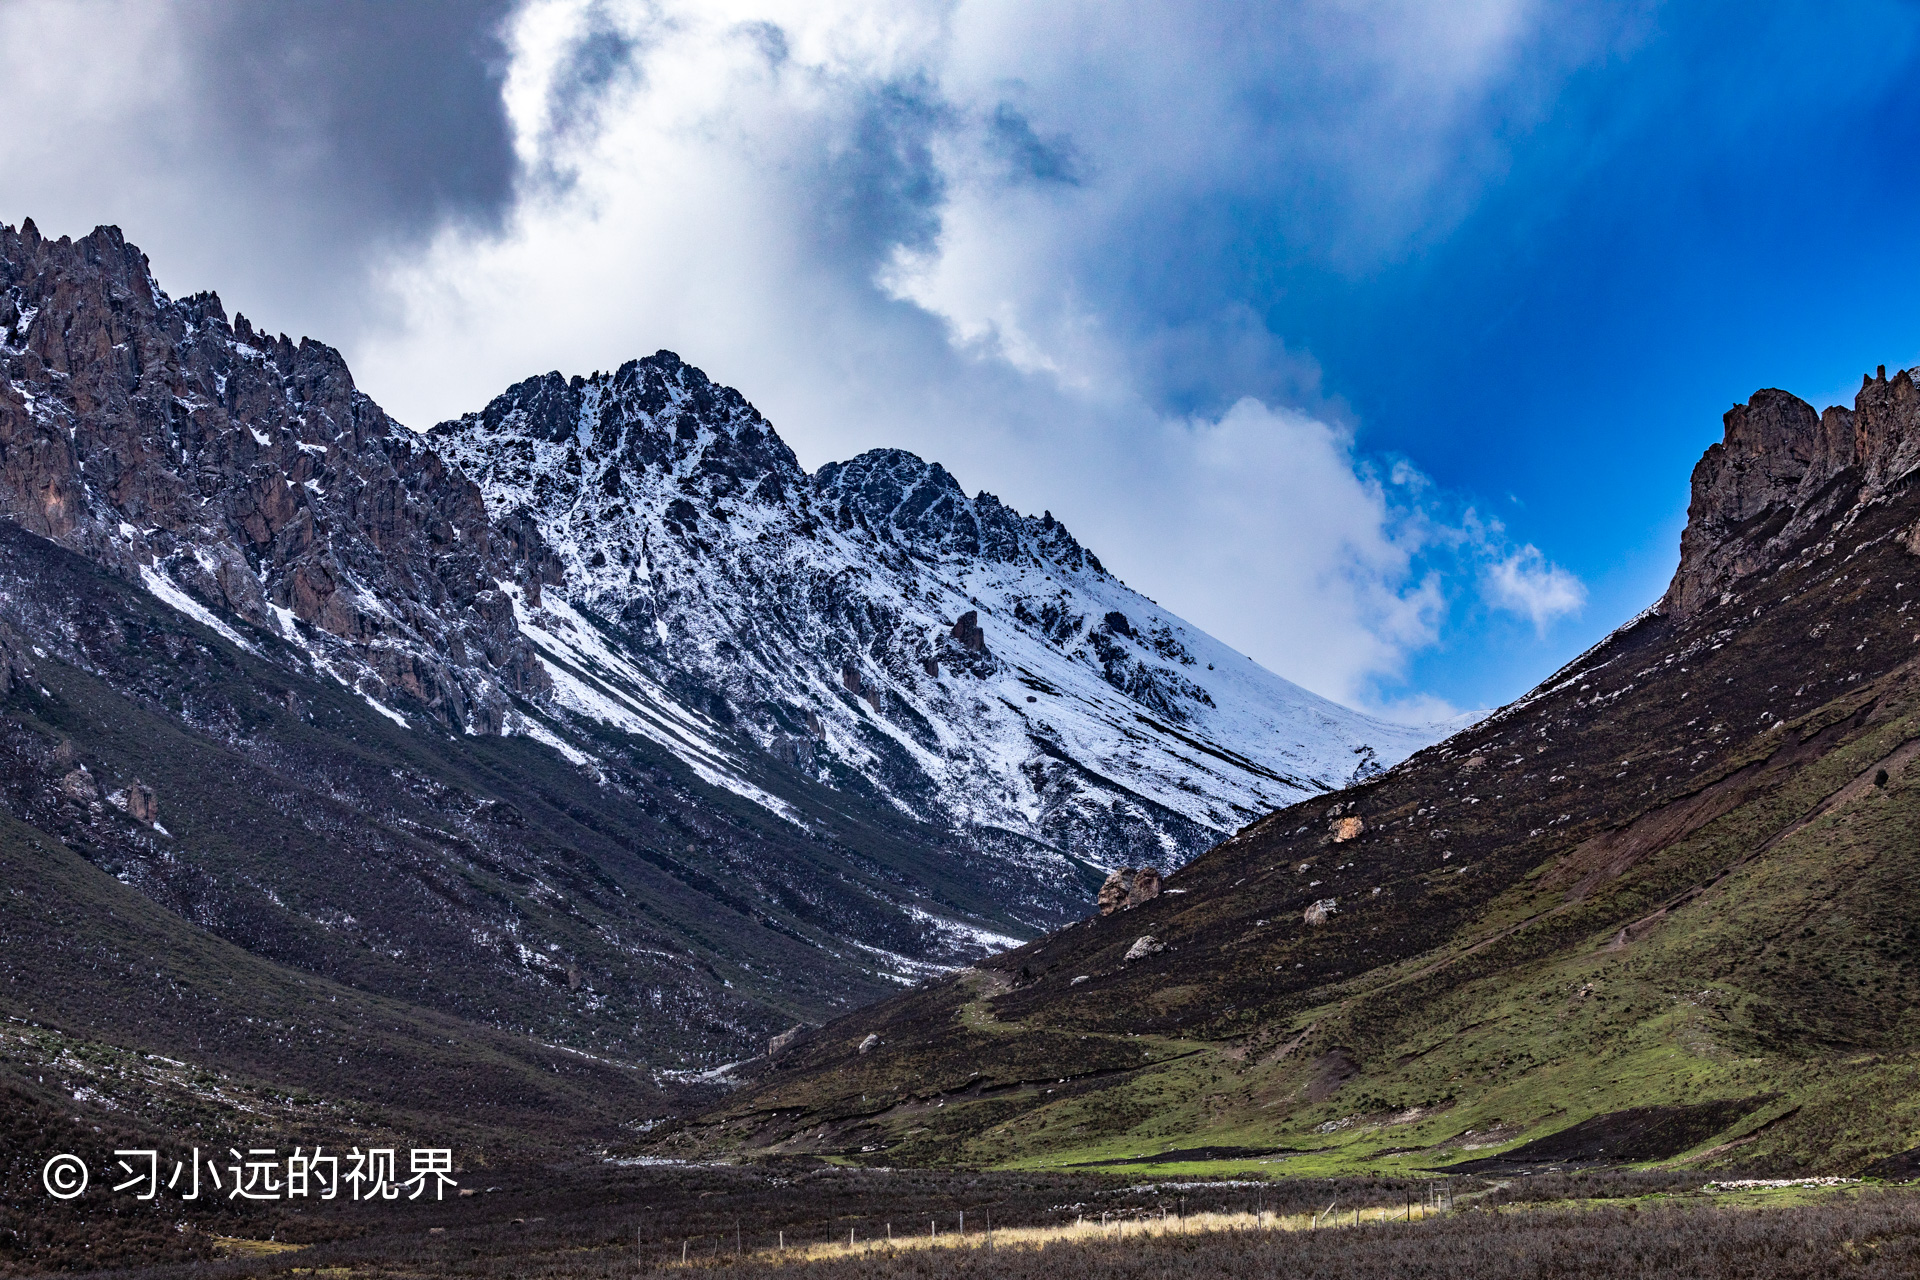 马牙雪山,藏语称阿尼嘎卓,位于甘肃省武威市天祝县西部,距天祝县城